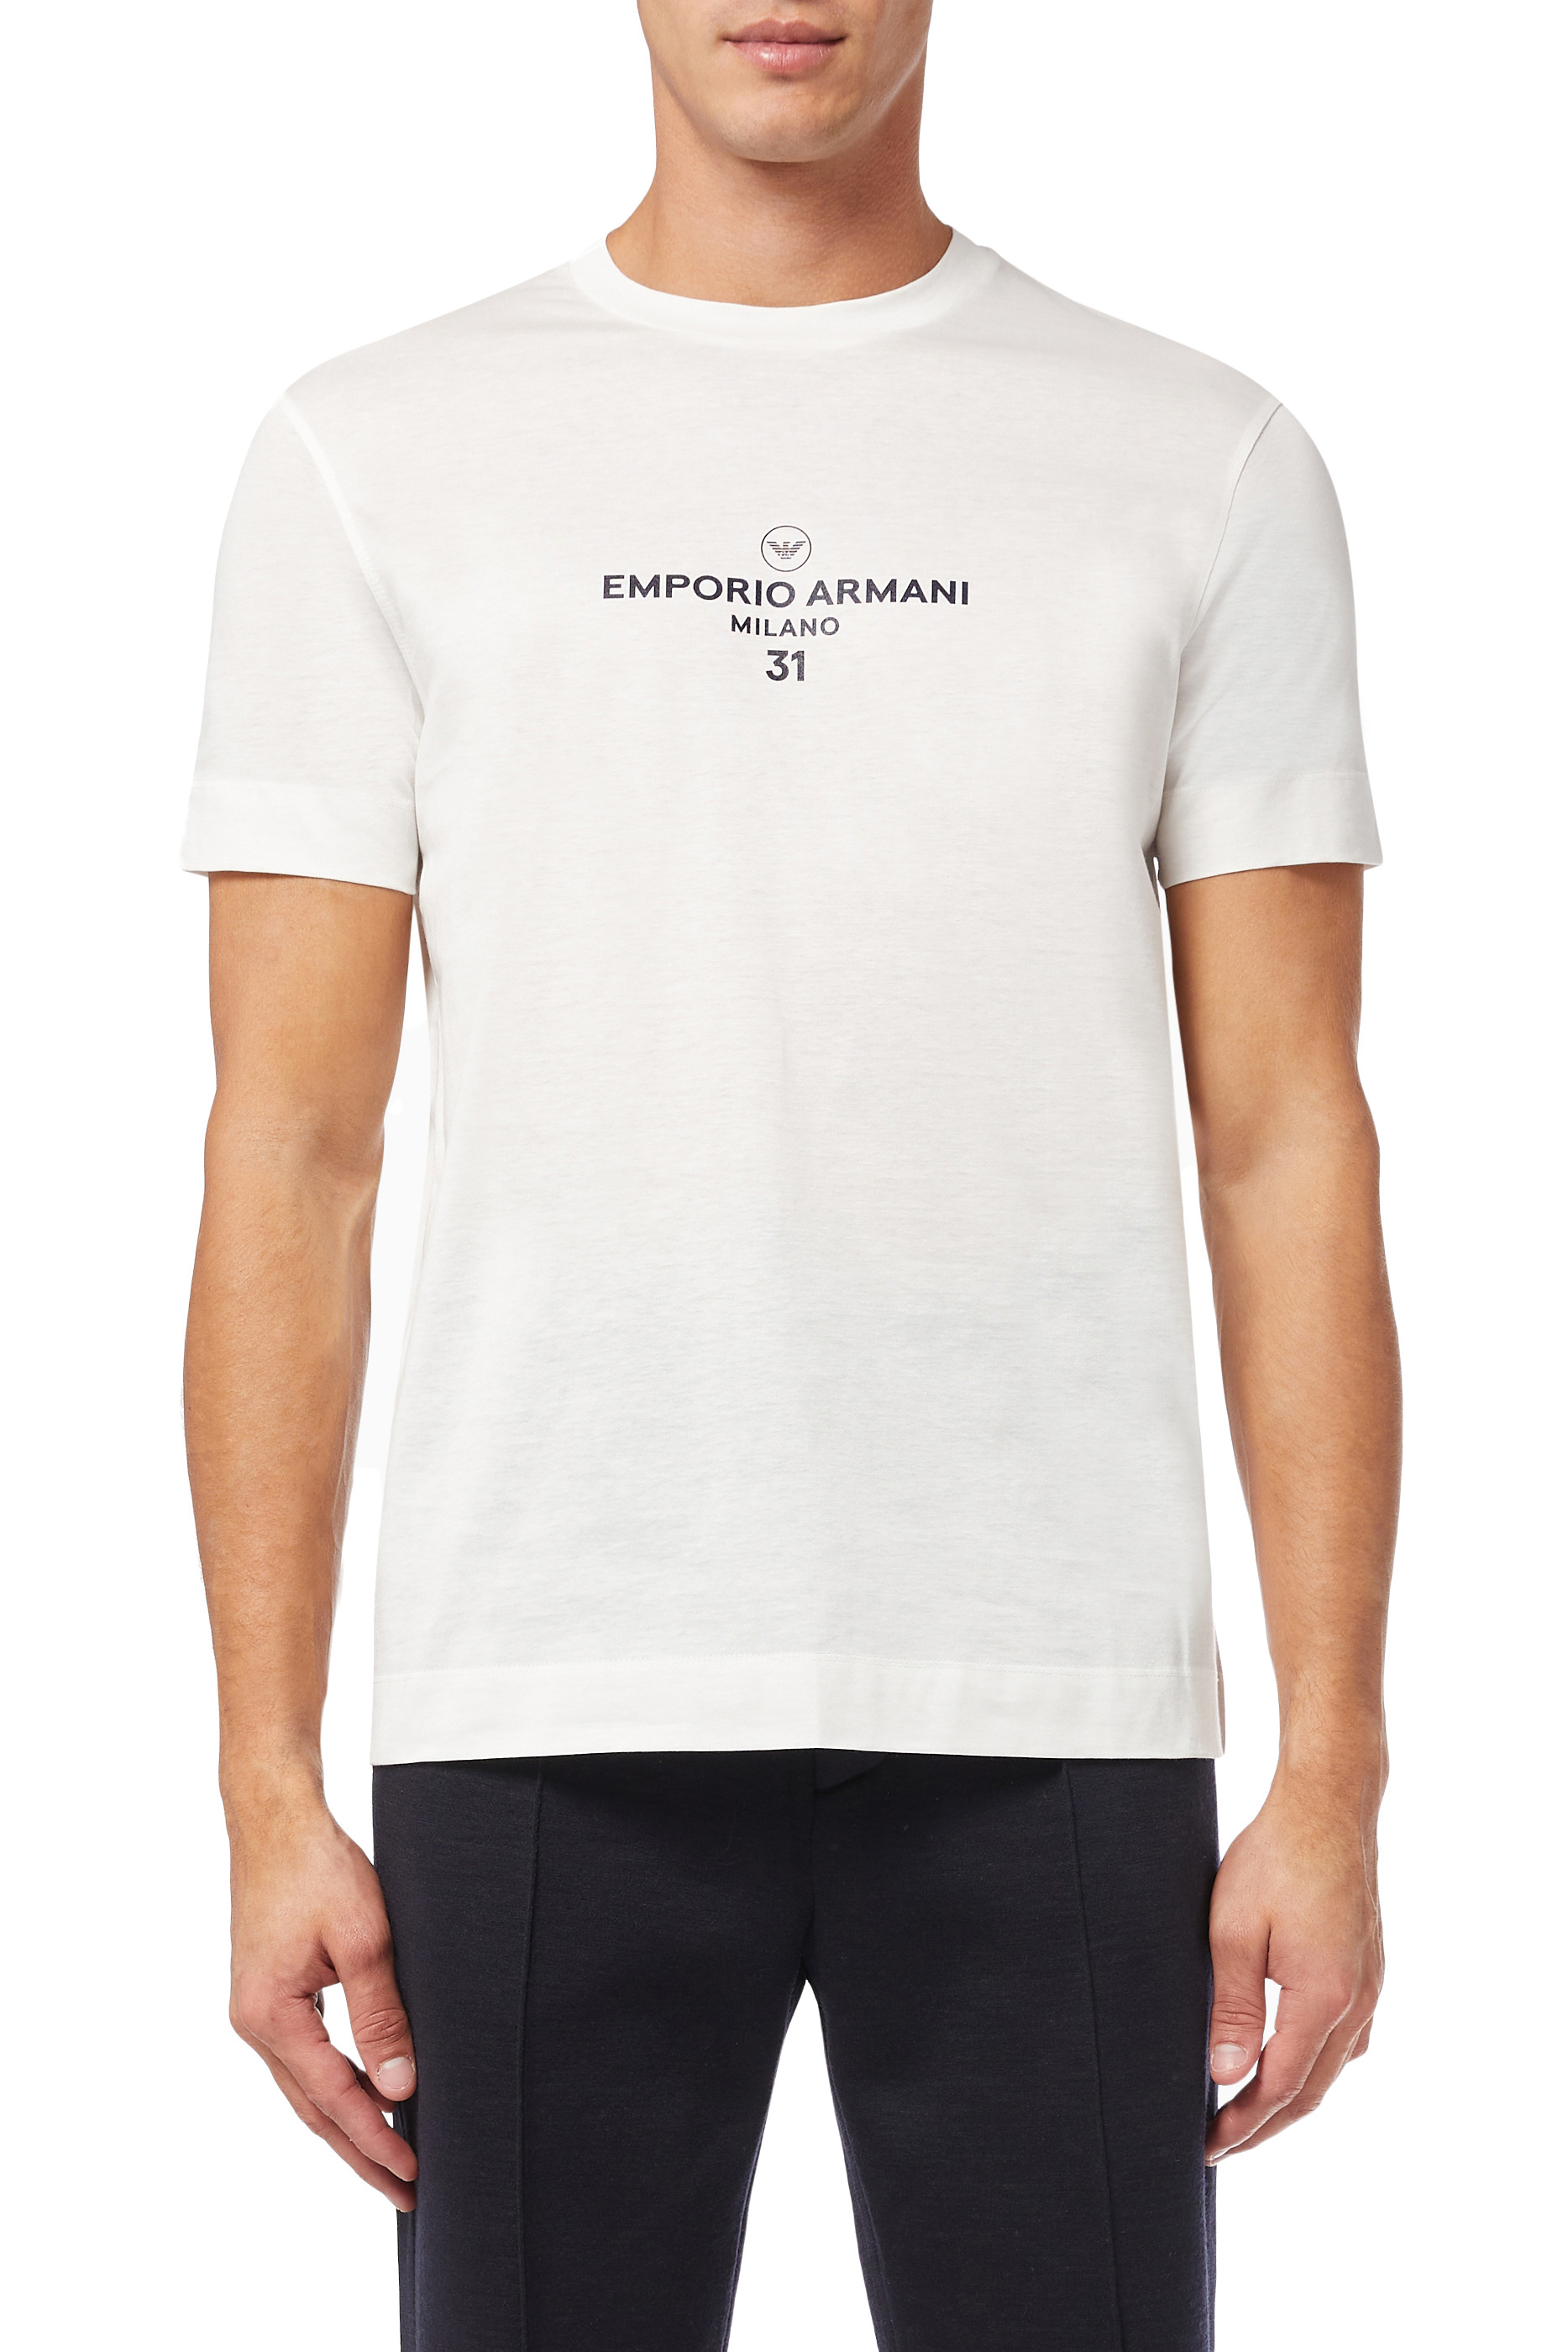 Buy Emporio Armani EA Milano 31 T-shirt for Mens | Bloomingdale's KSA